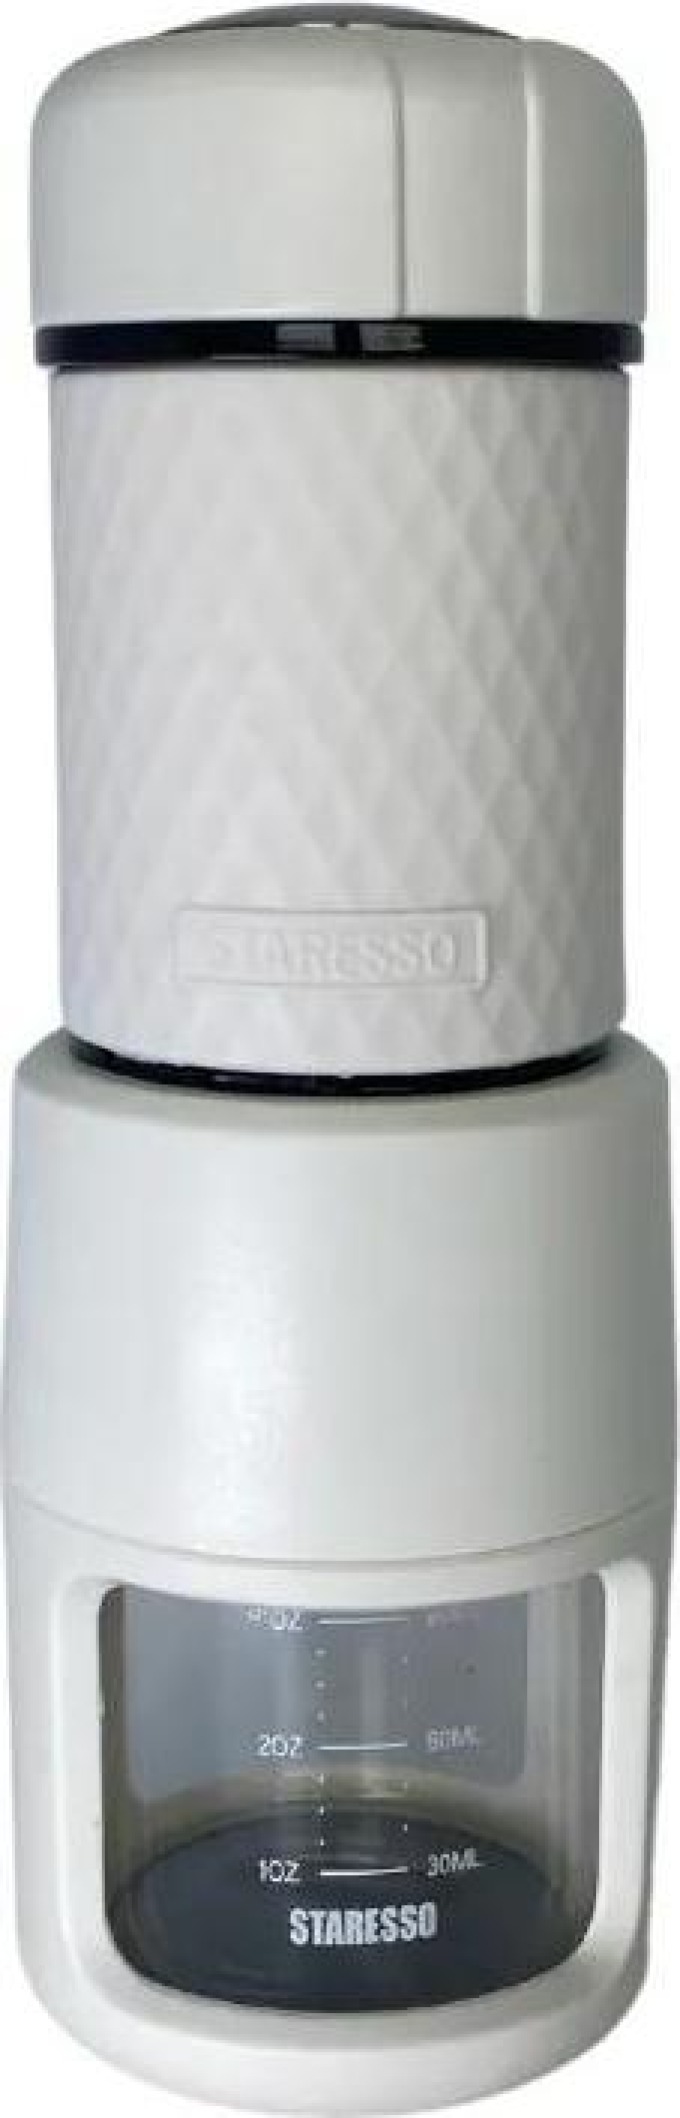 Kávovar STARESSO SP-200 White s dárkovými kapslemi L´OR Espresso Colombia zdarma